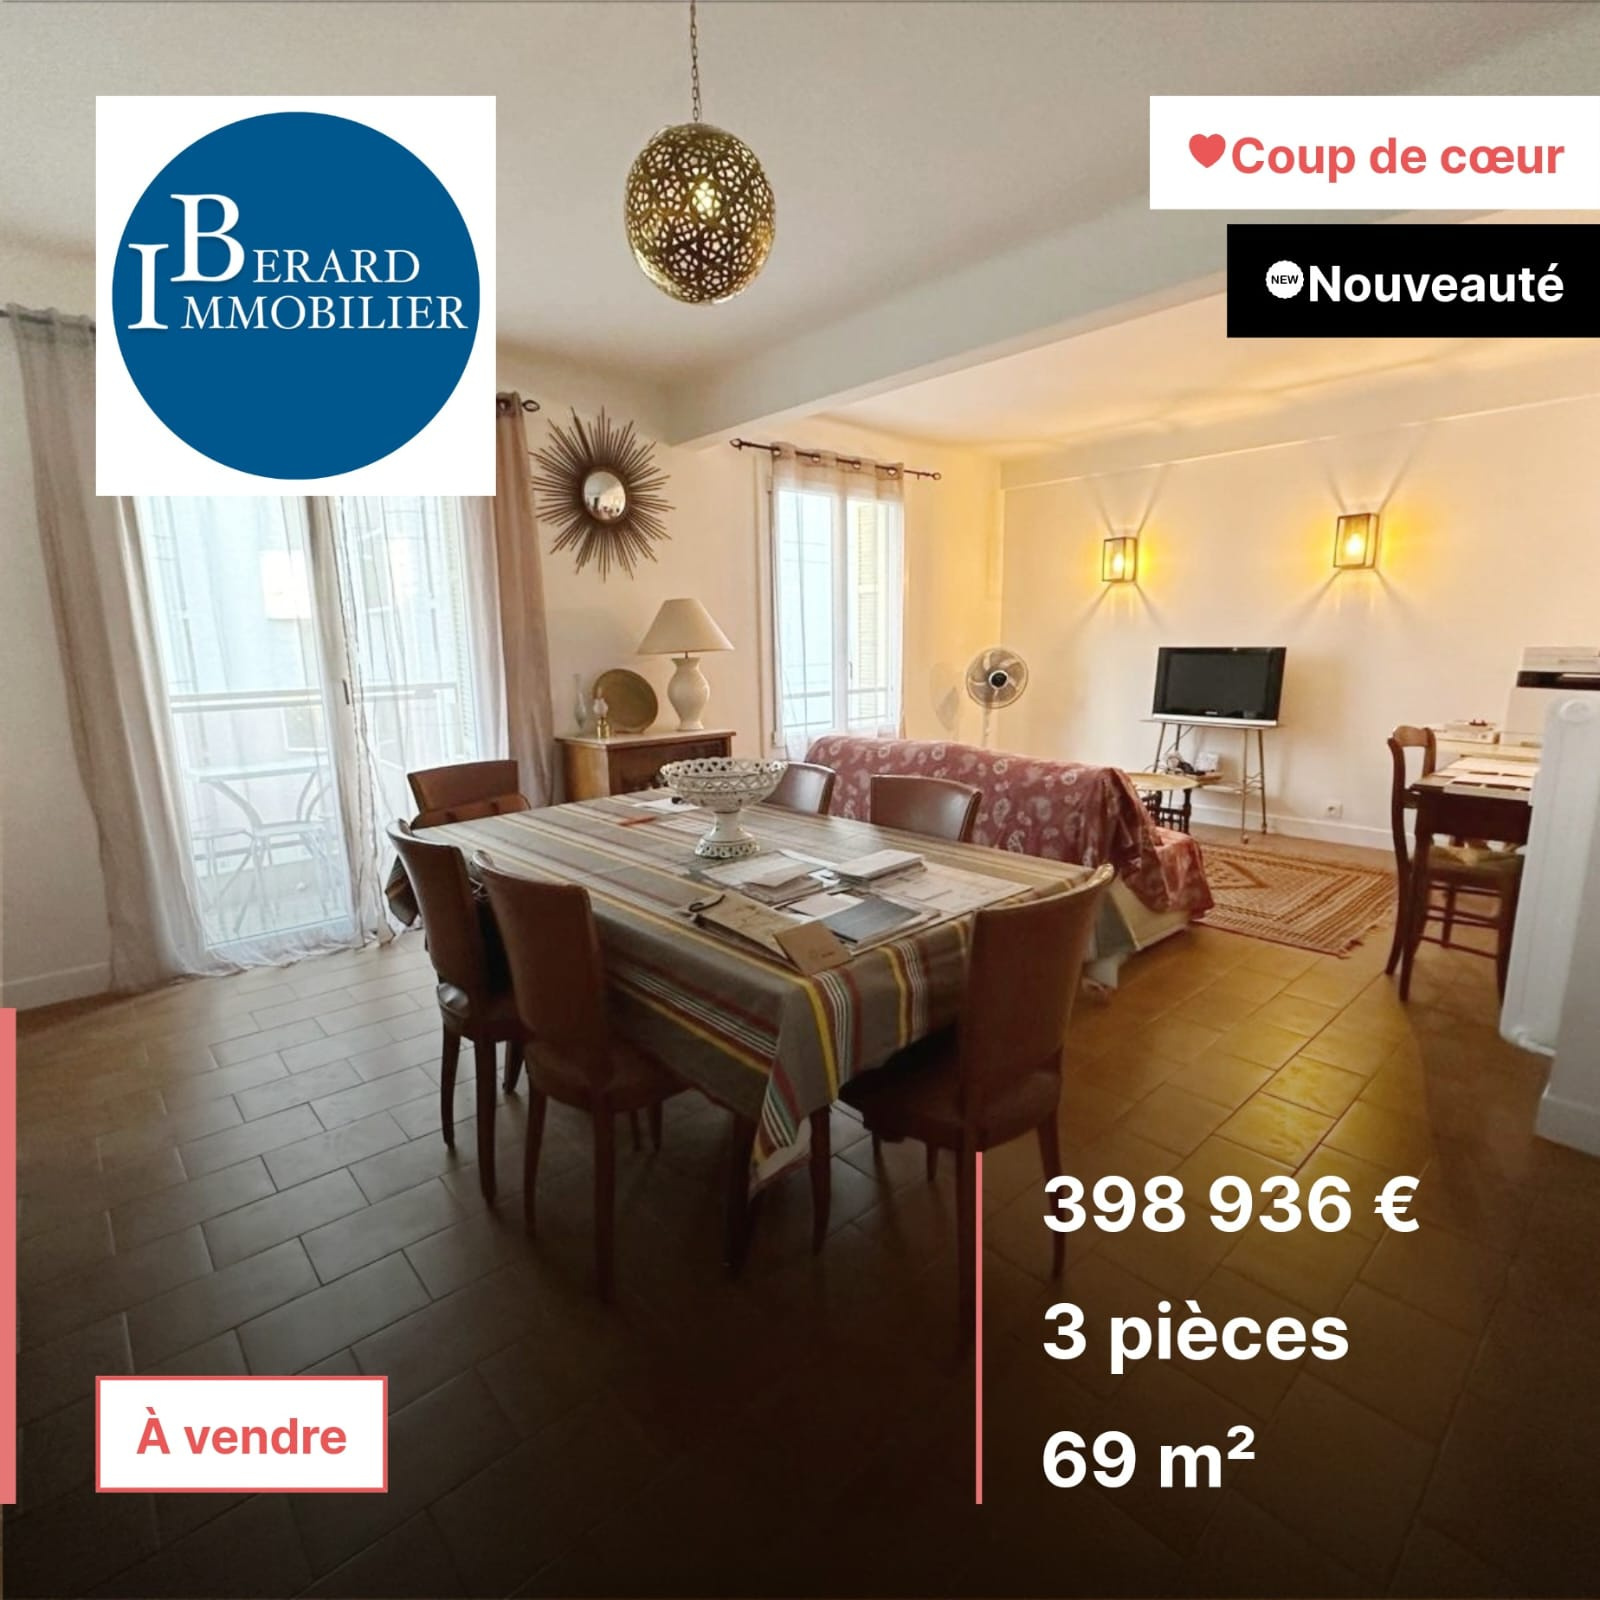 Vente Appartement 69m² 3 Pièces à Nice (06000) - Berard Immobilier